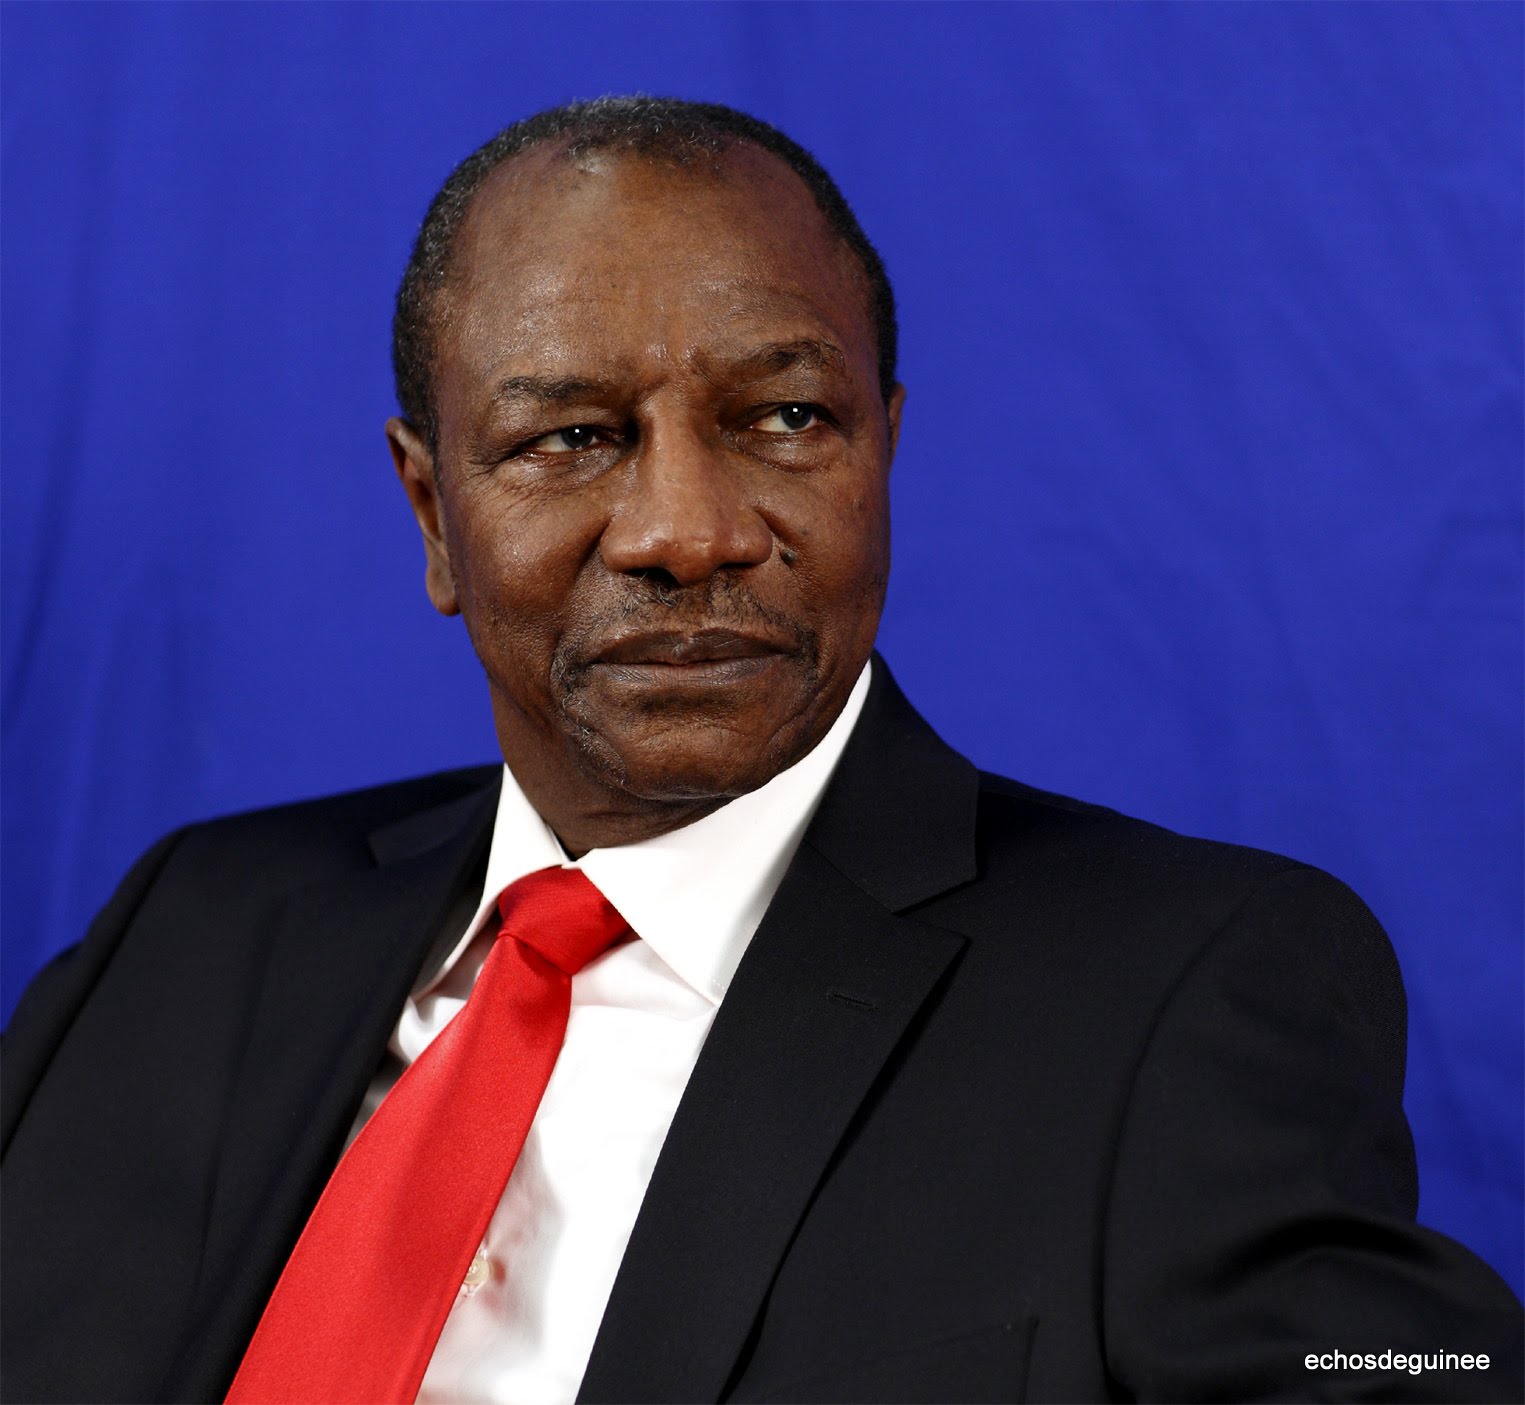 Terrorisme au Sahel : une bataille de tout le monde selon le président guinéen